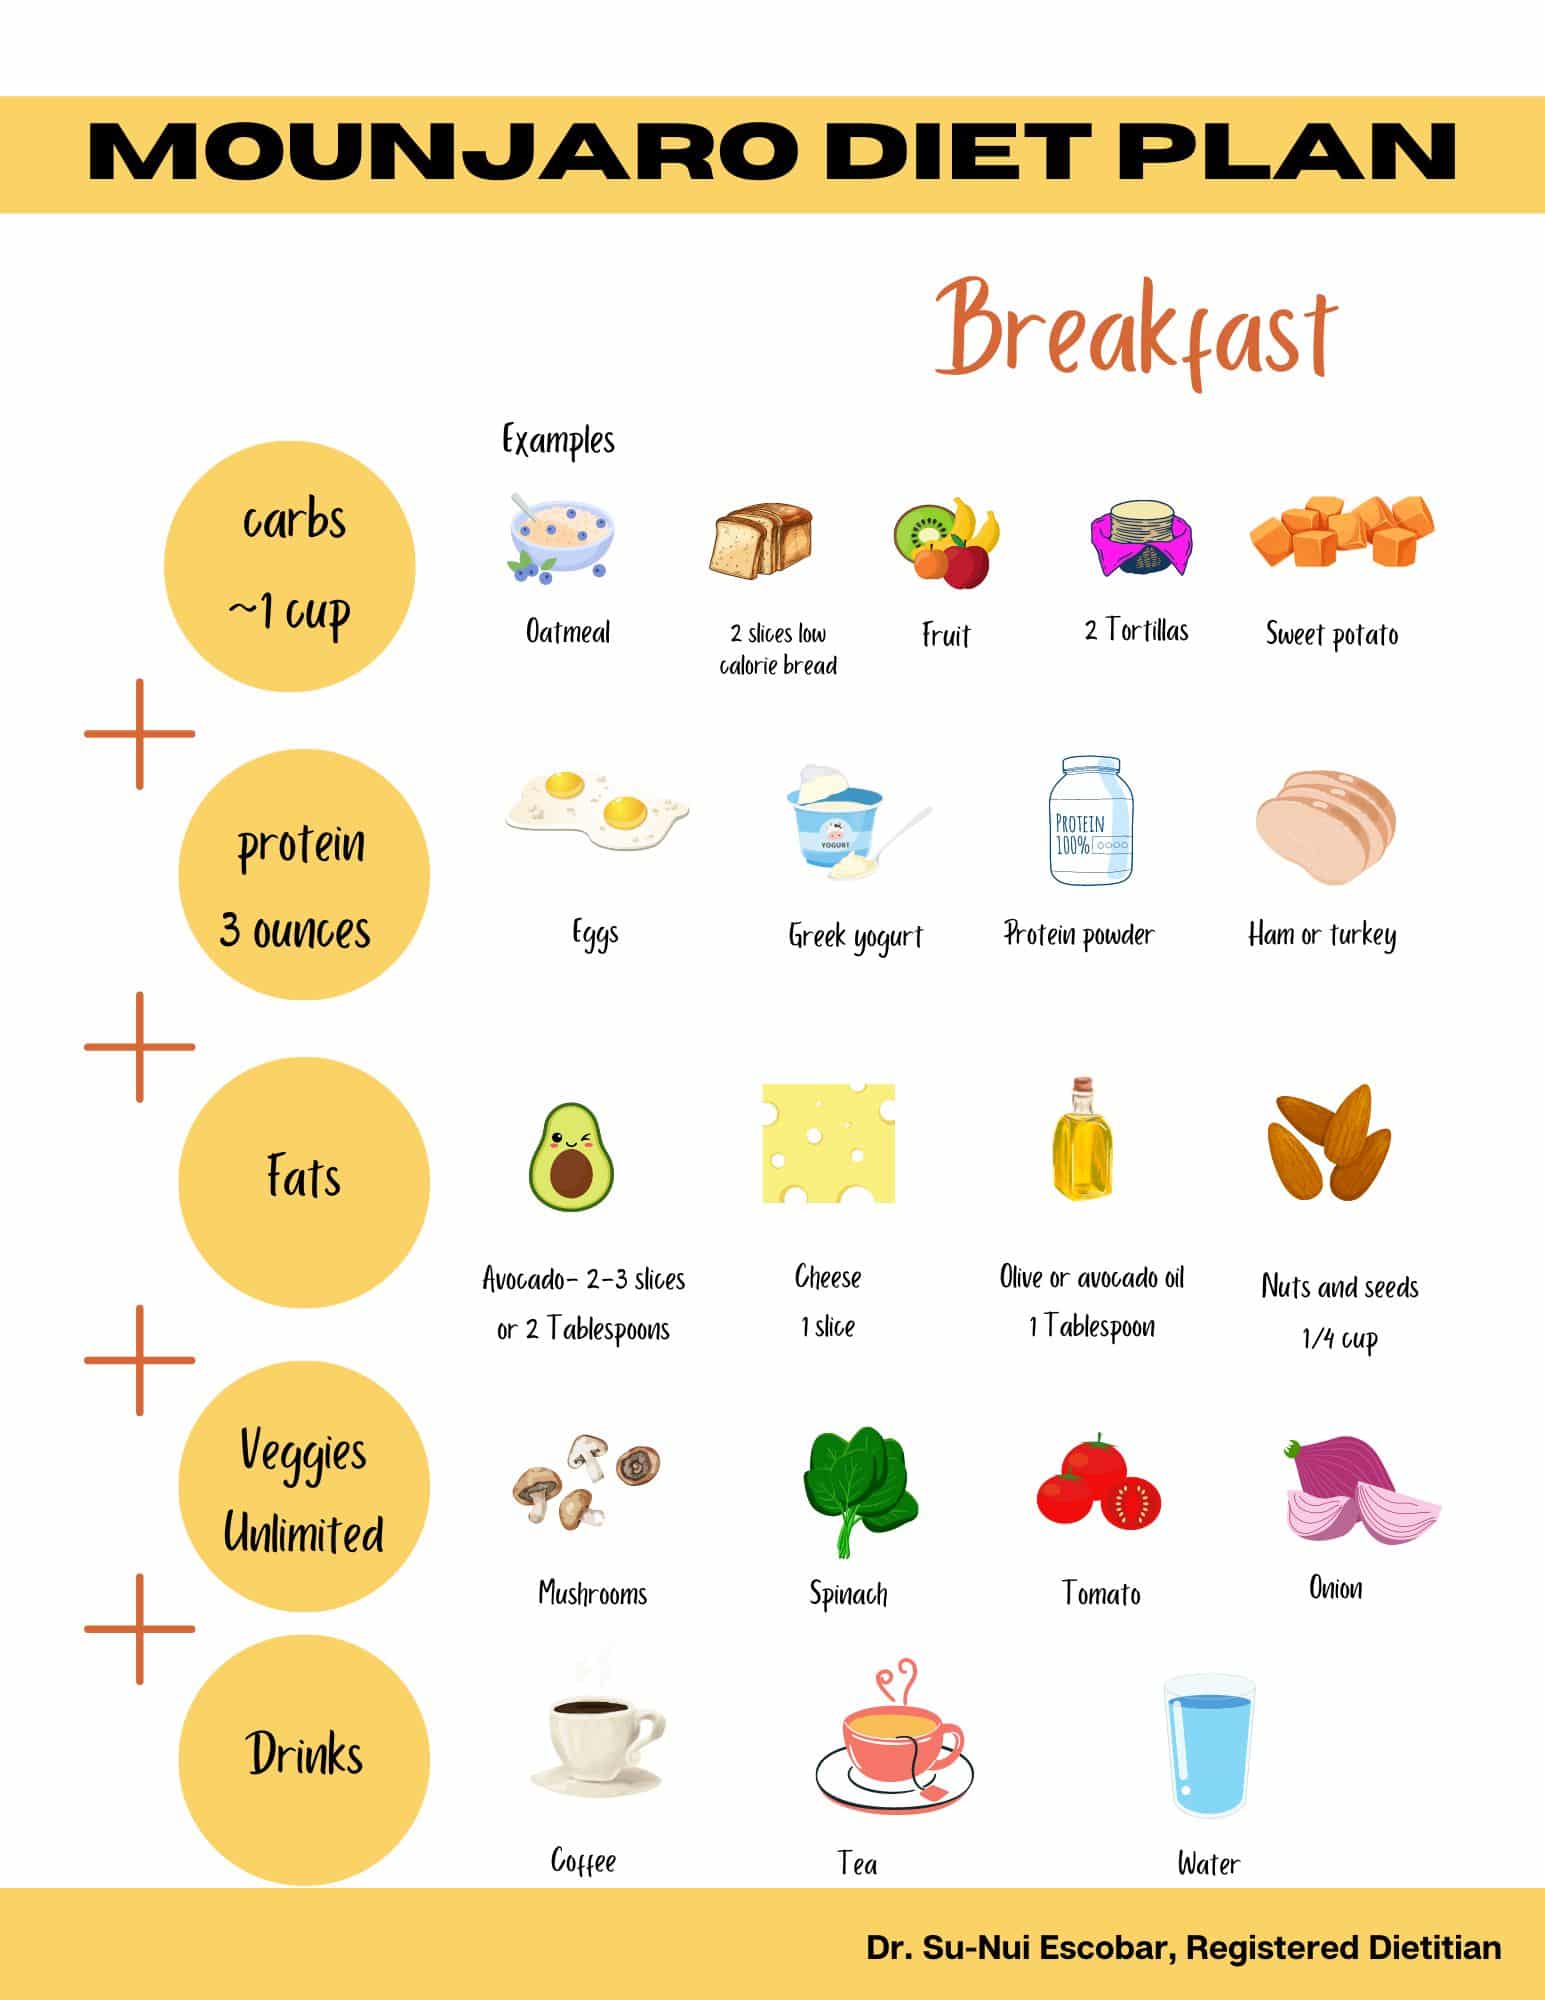 Mounjaro Diet Plan Breakfast